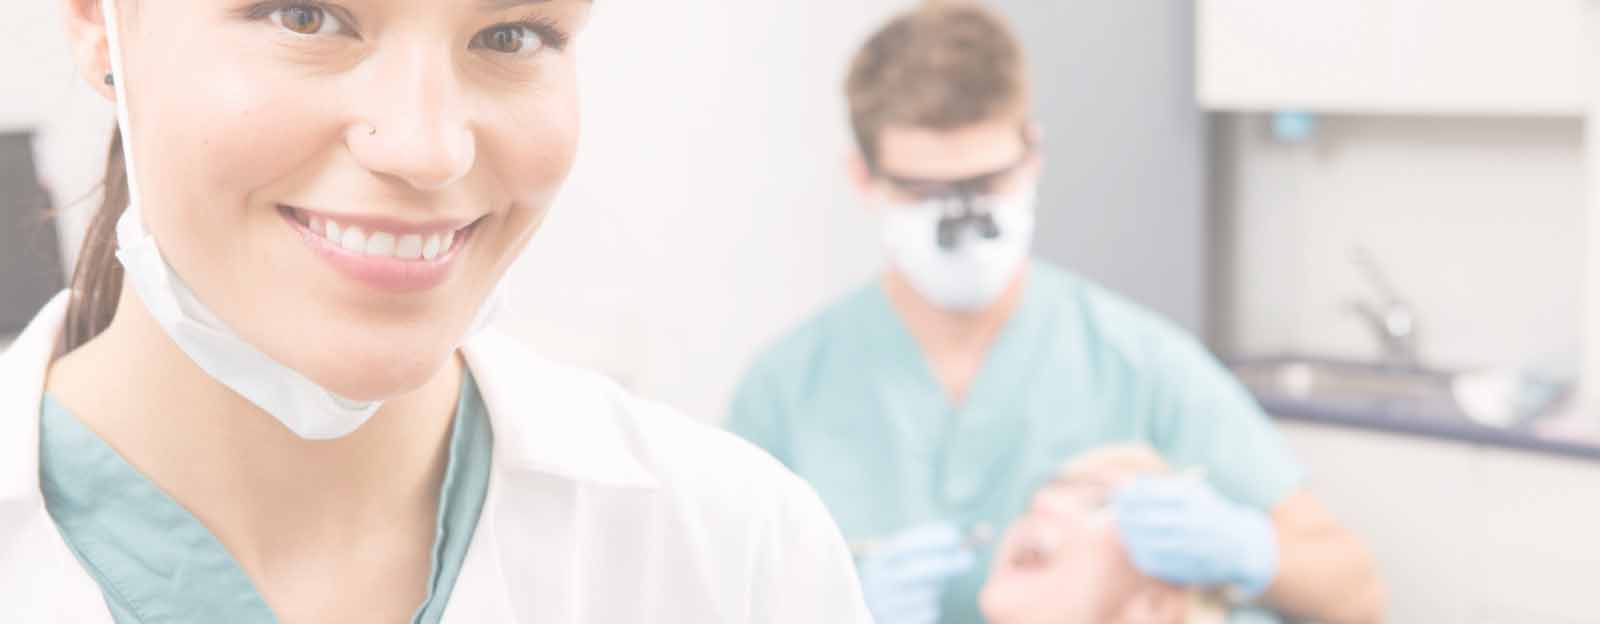 frecuencia de visita al dentista